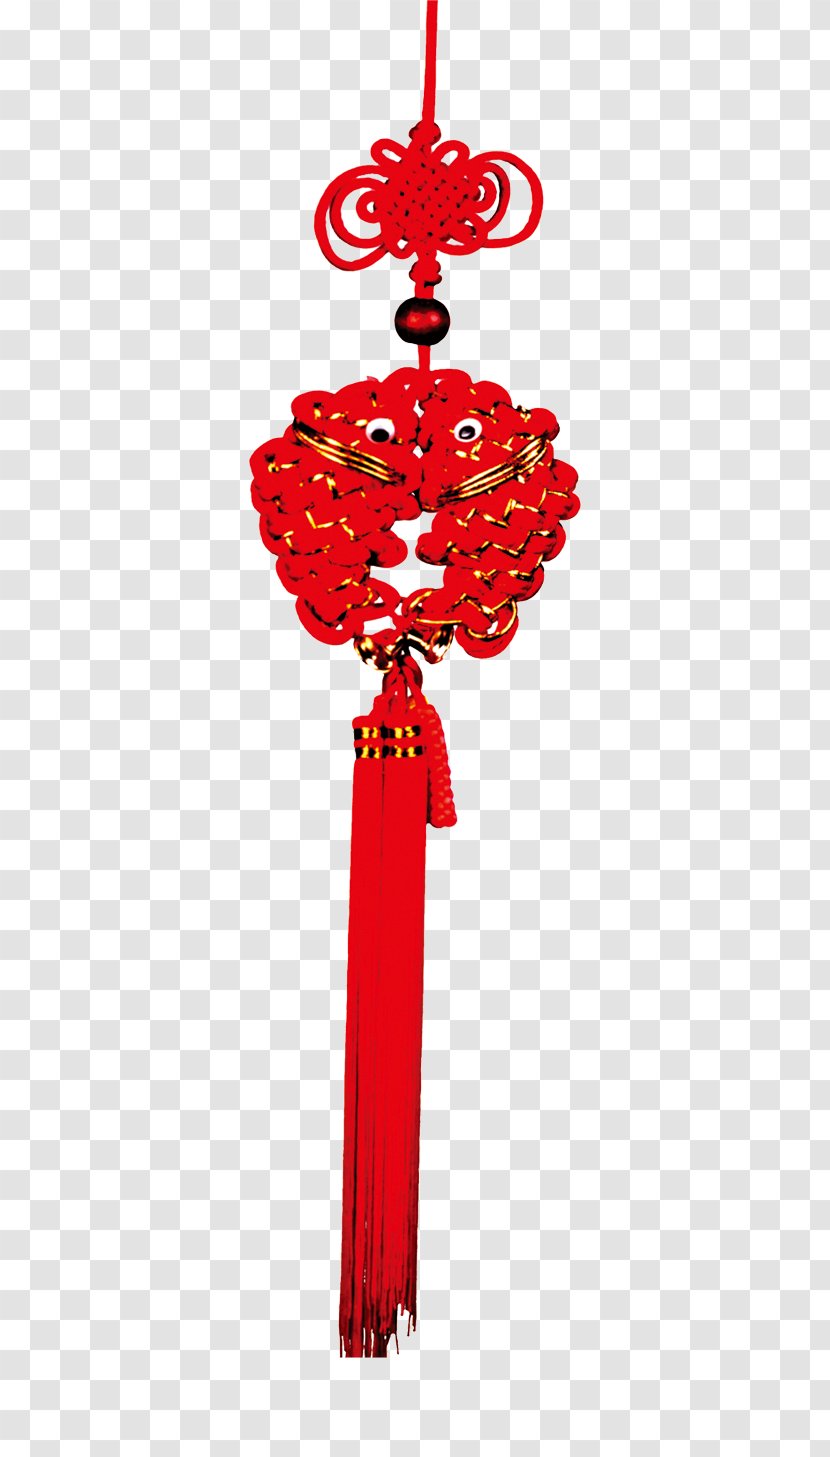 Chinesischer Knoten Flowerz Transparency And Translucency - Pisces Chinese Knot Transparent PNG